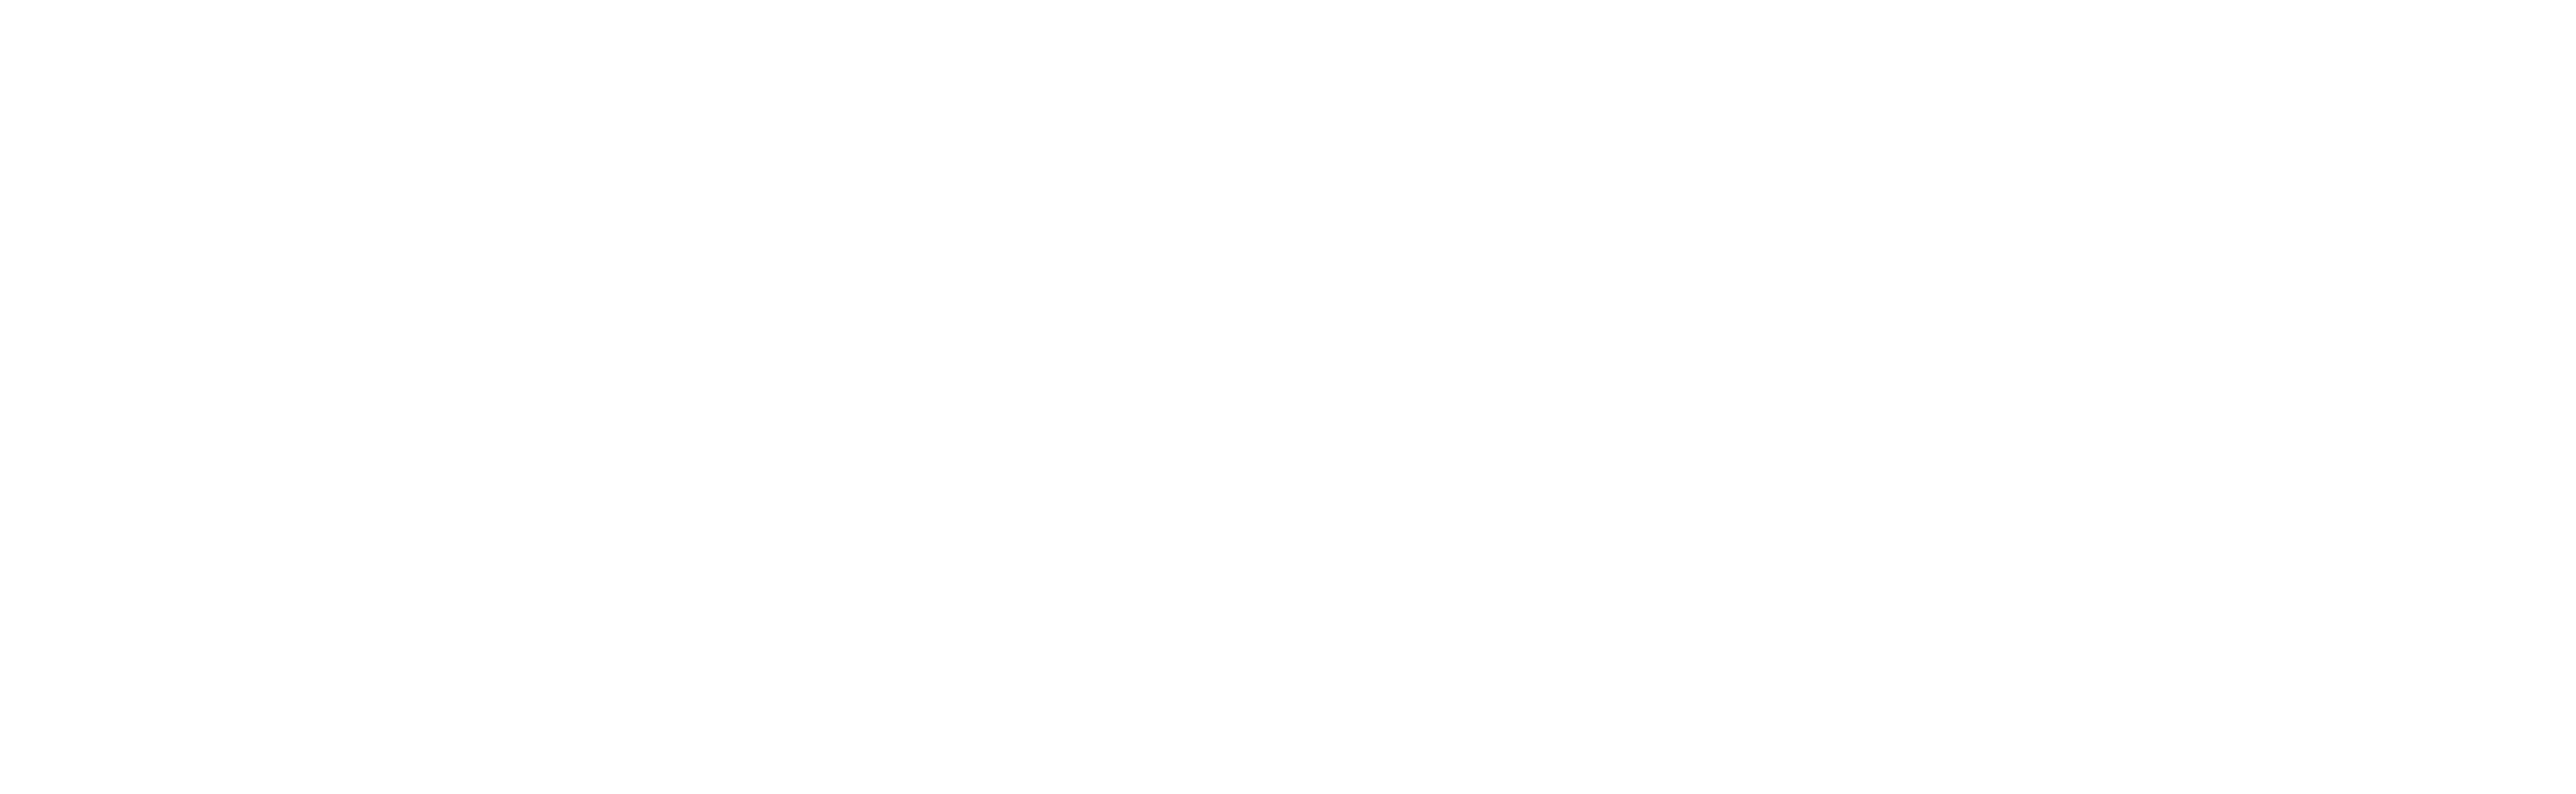 新！ 北海道マラソン2022 8.28 sun. START!